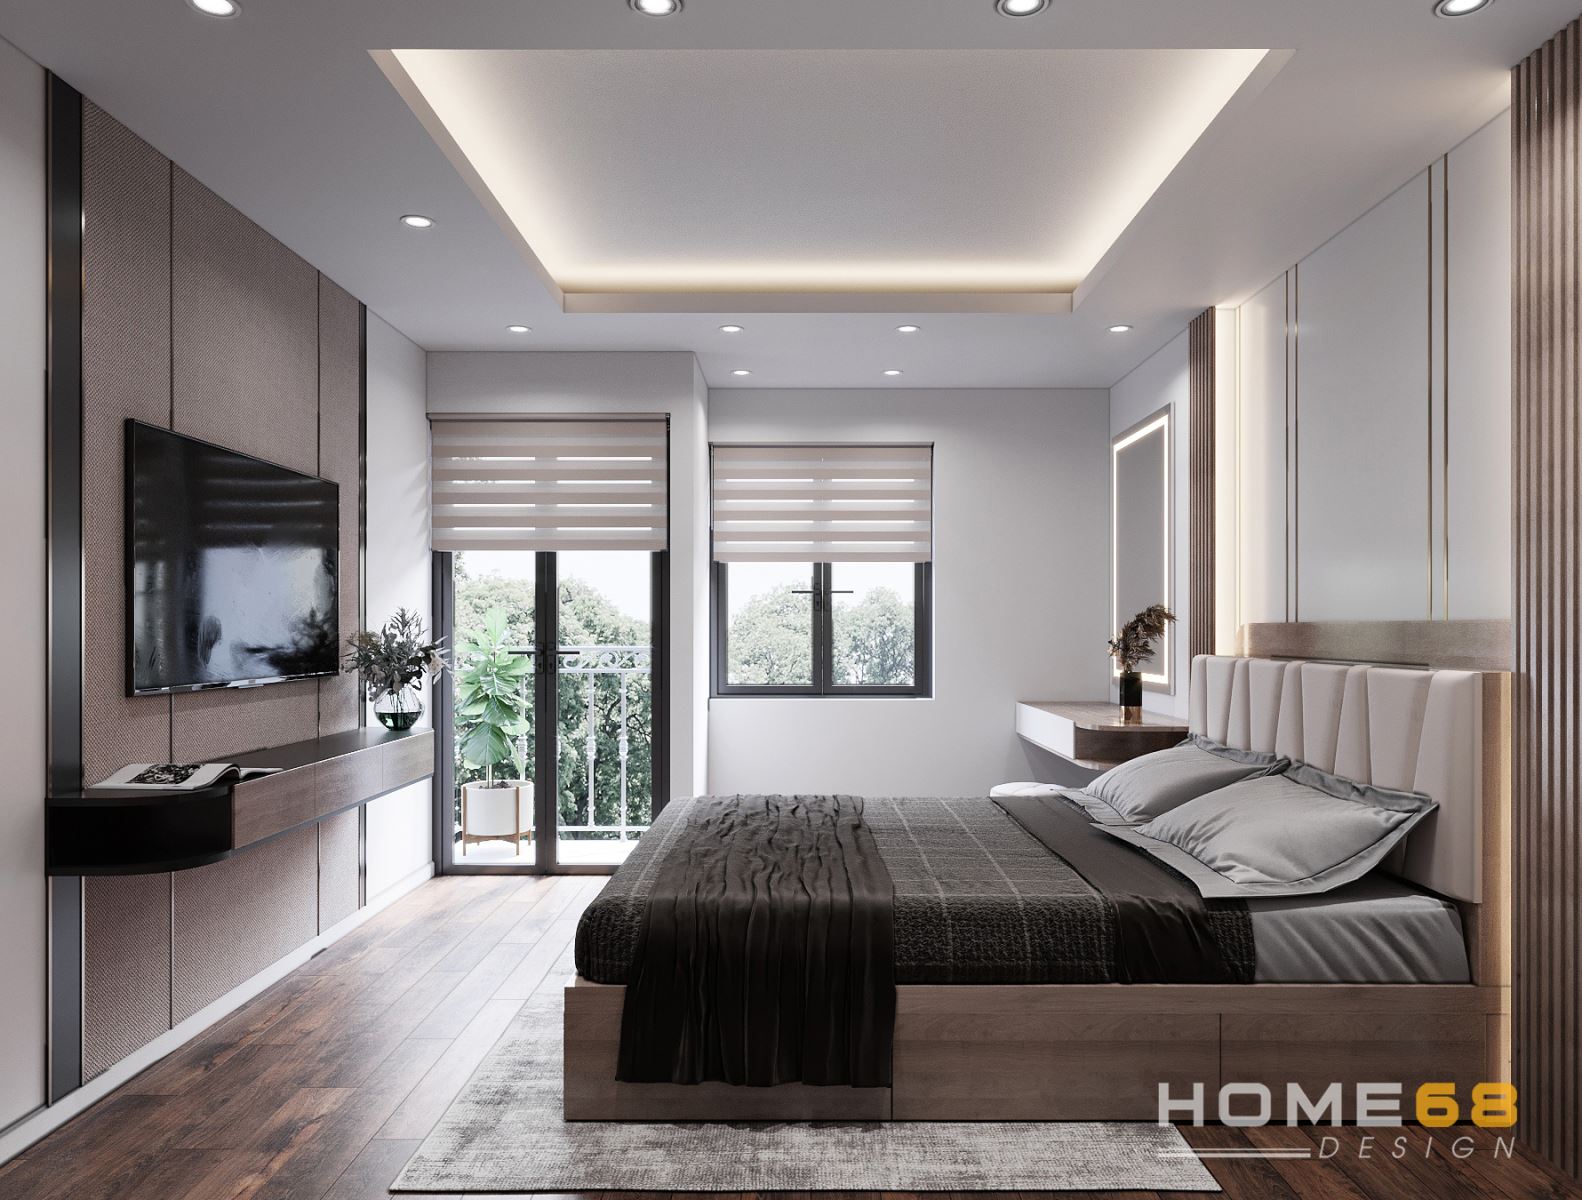 Dự án thiết kế nội thất phòng ngủ hiện đại,sang trọng- HOME68